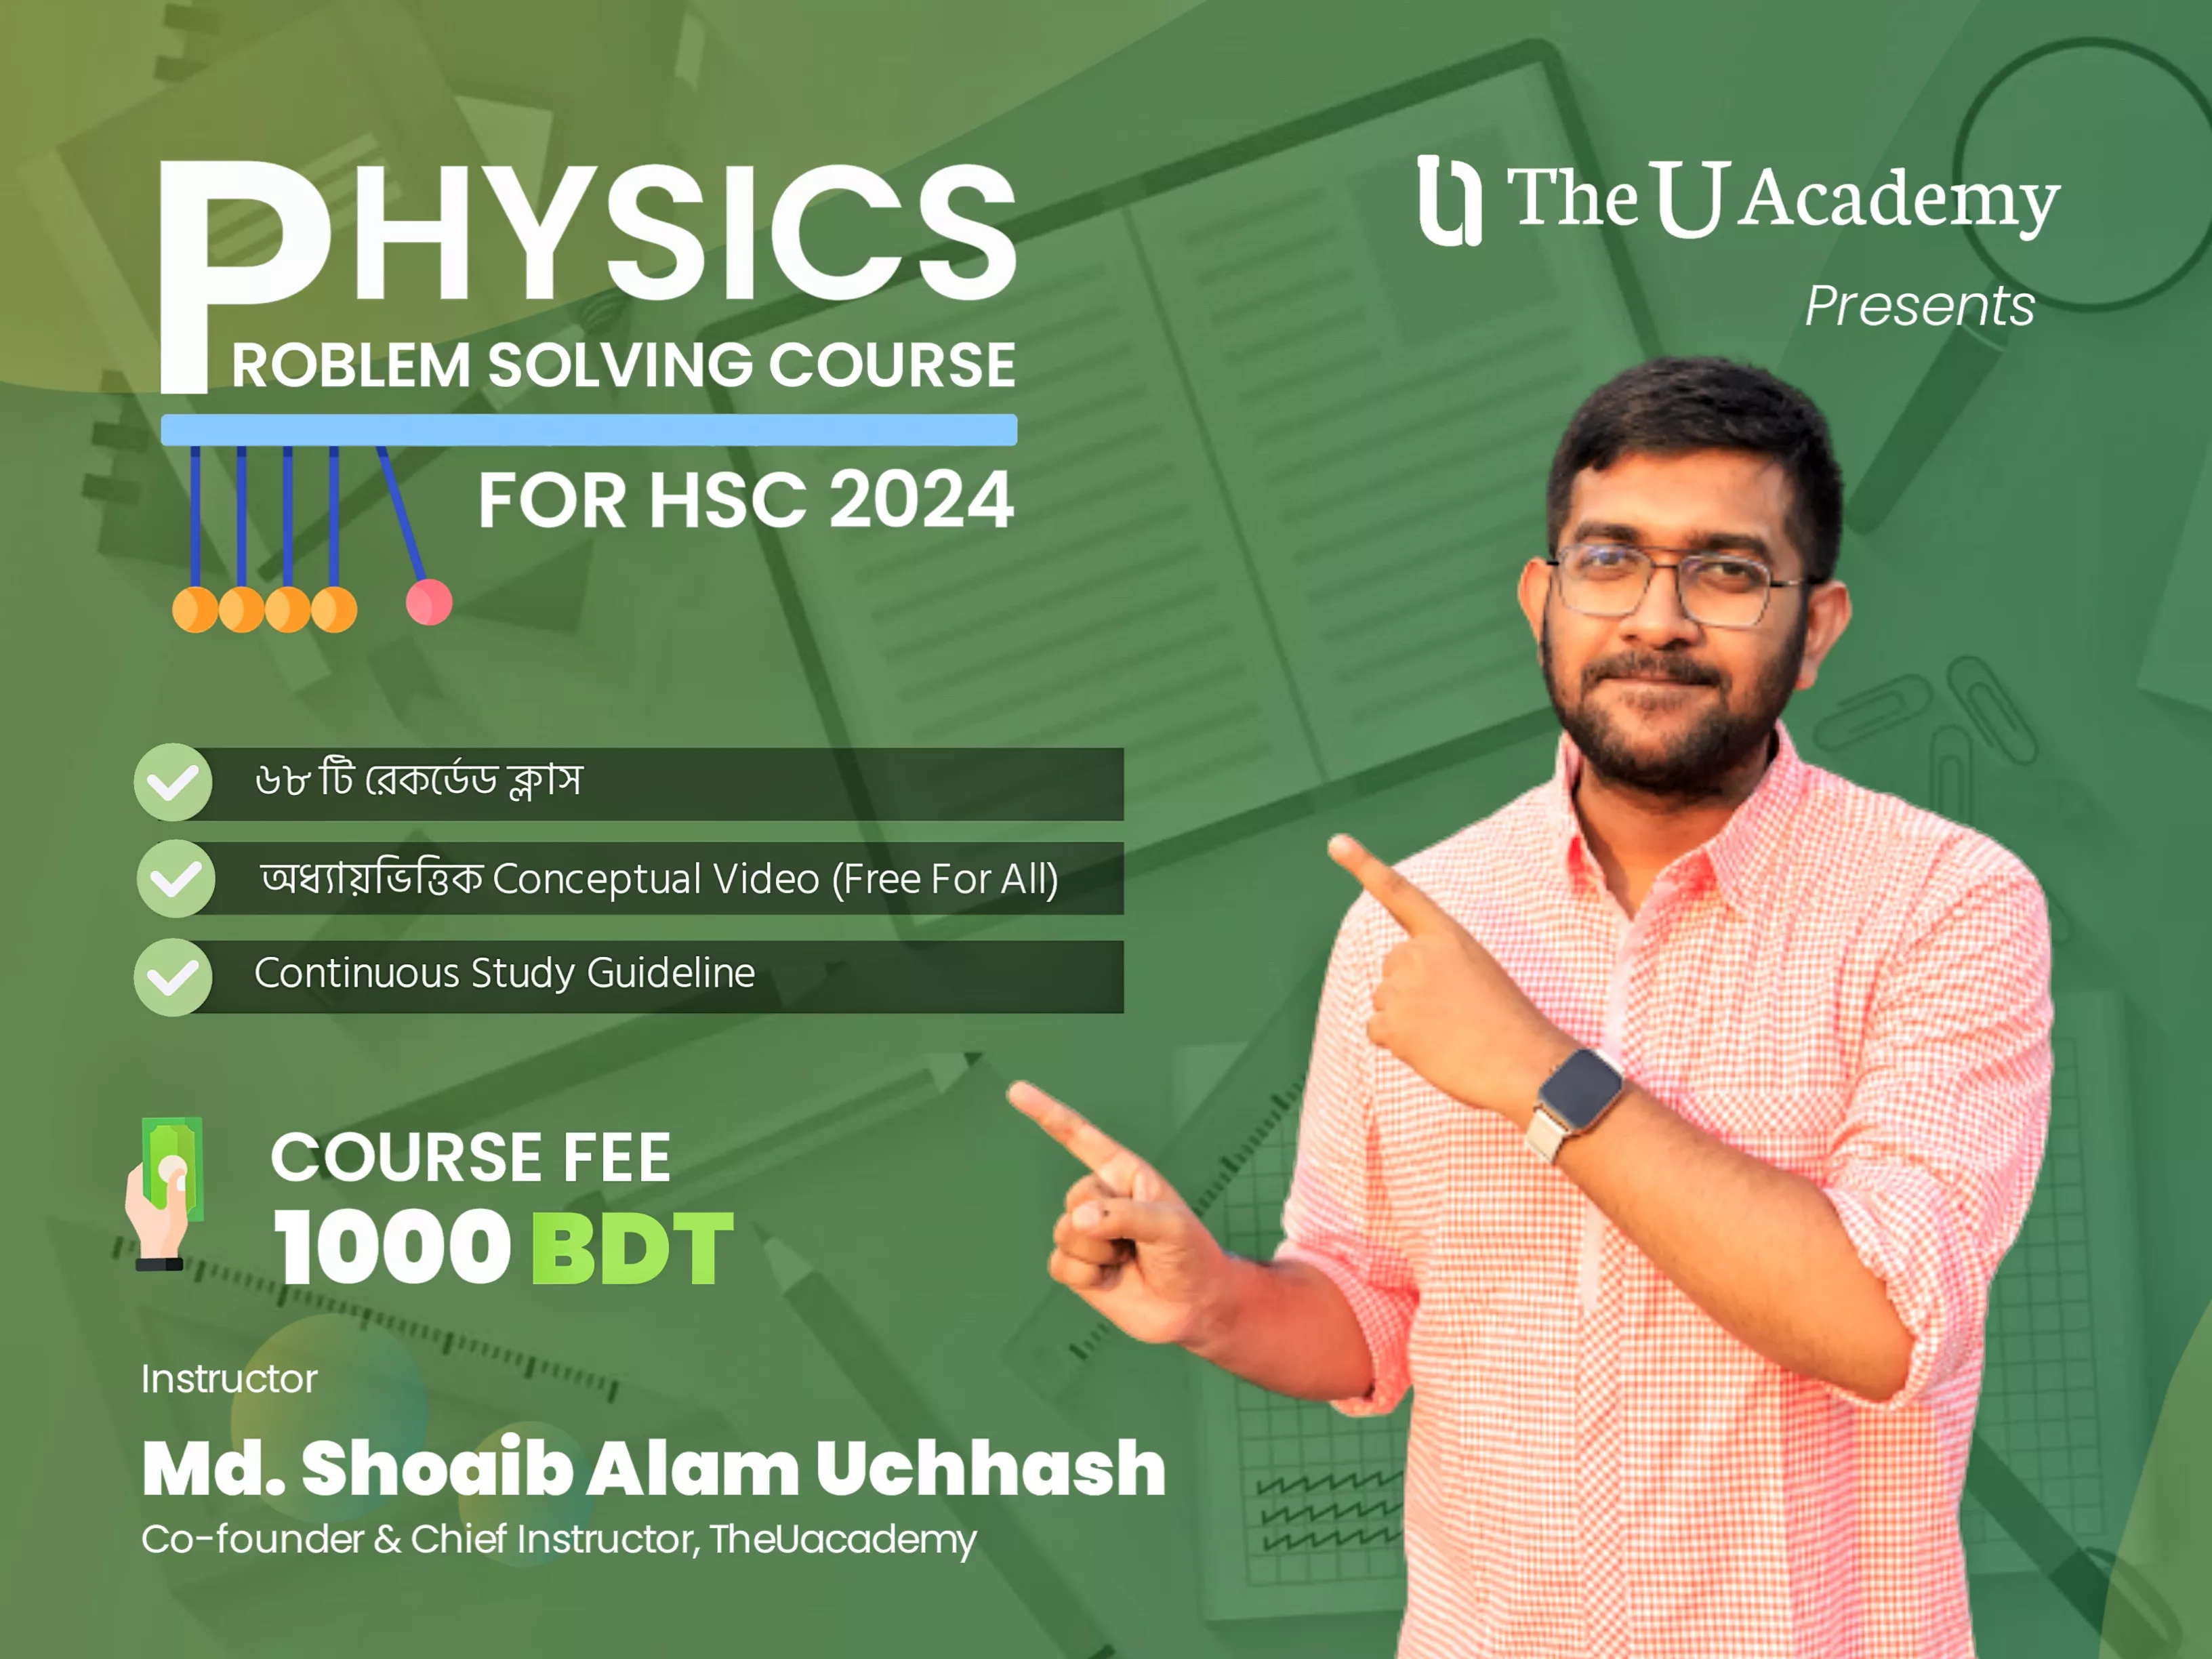 Physics Problem Solving Course - HSC 2024